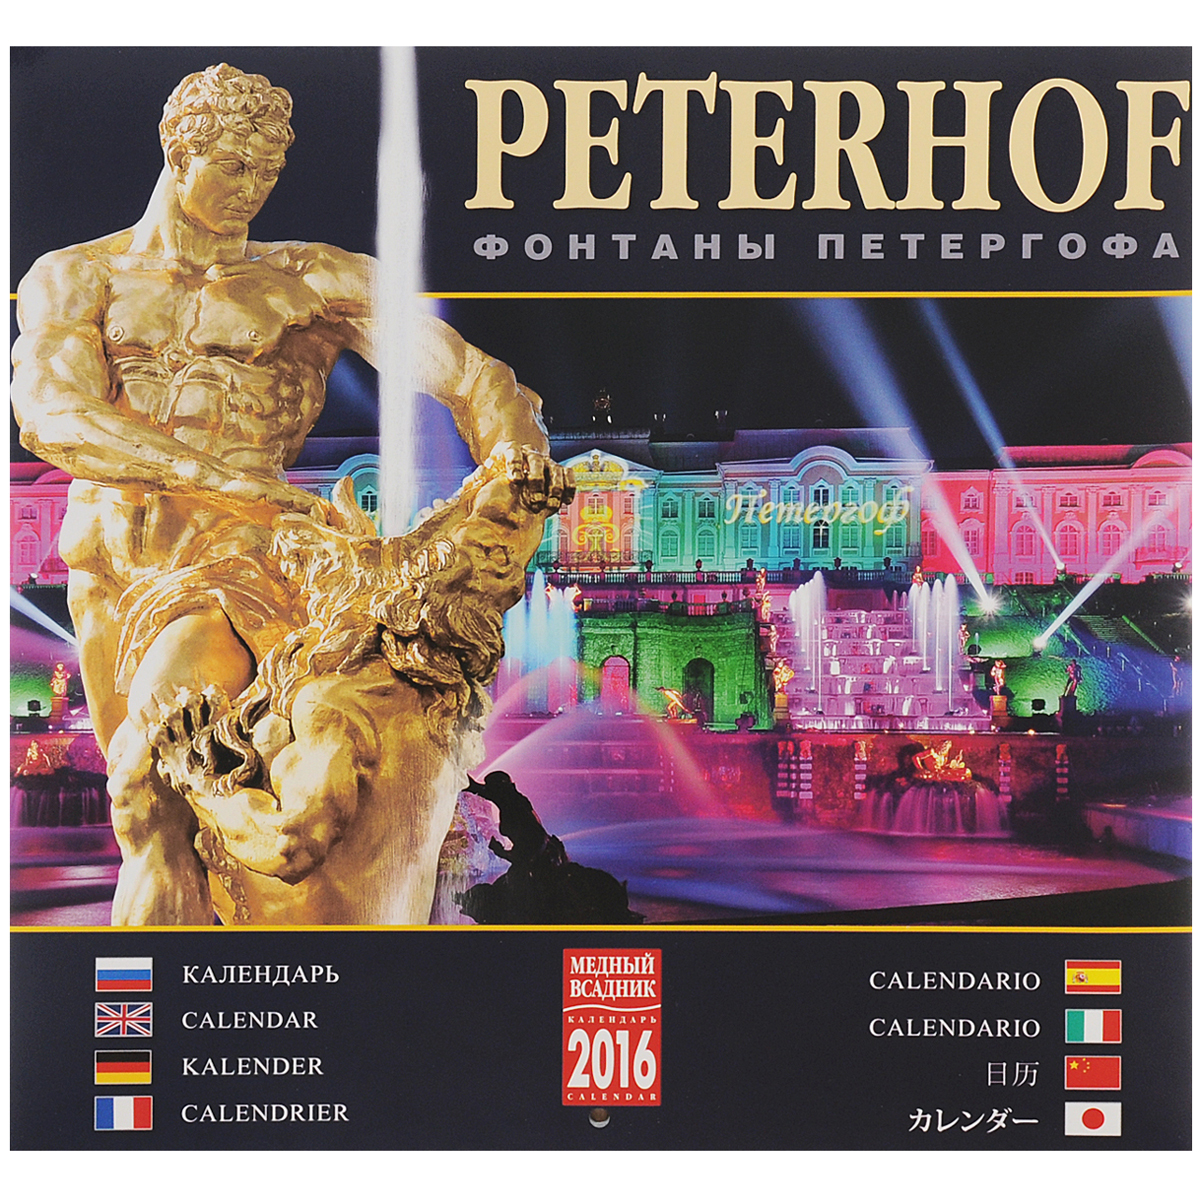 Календарь 2016 (на скрепке). Фонтаны Петергофа / Peterhof